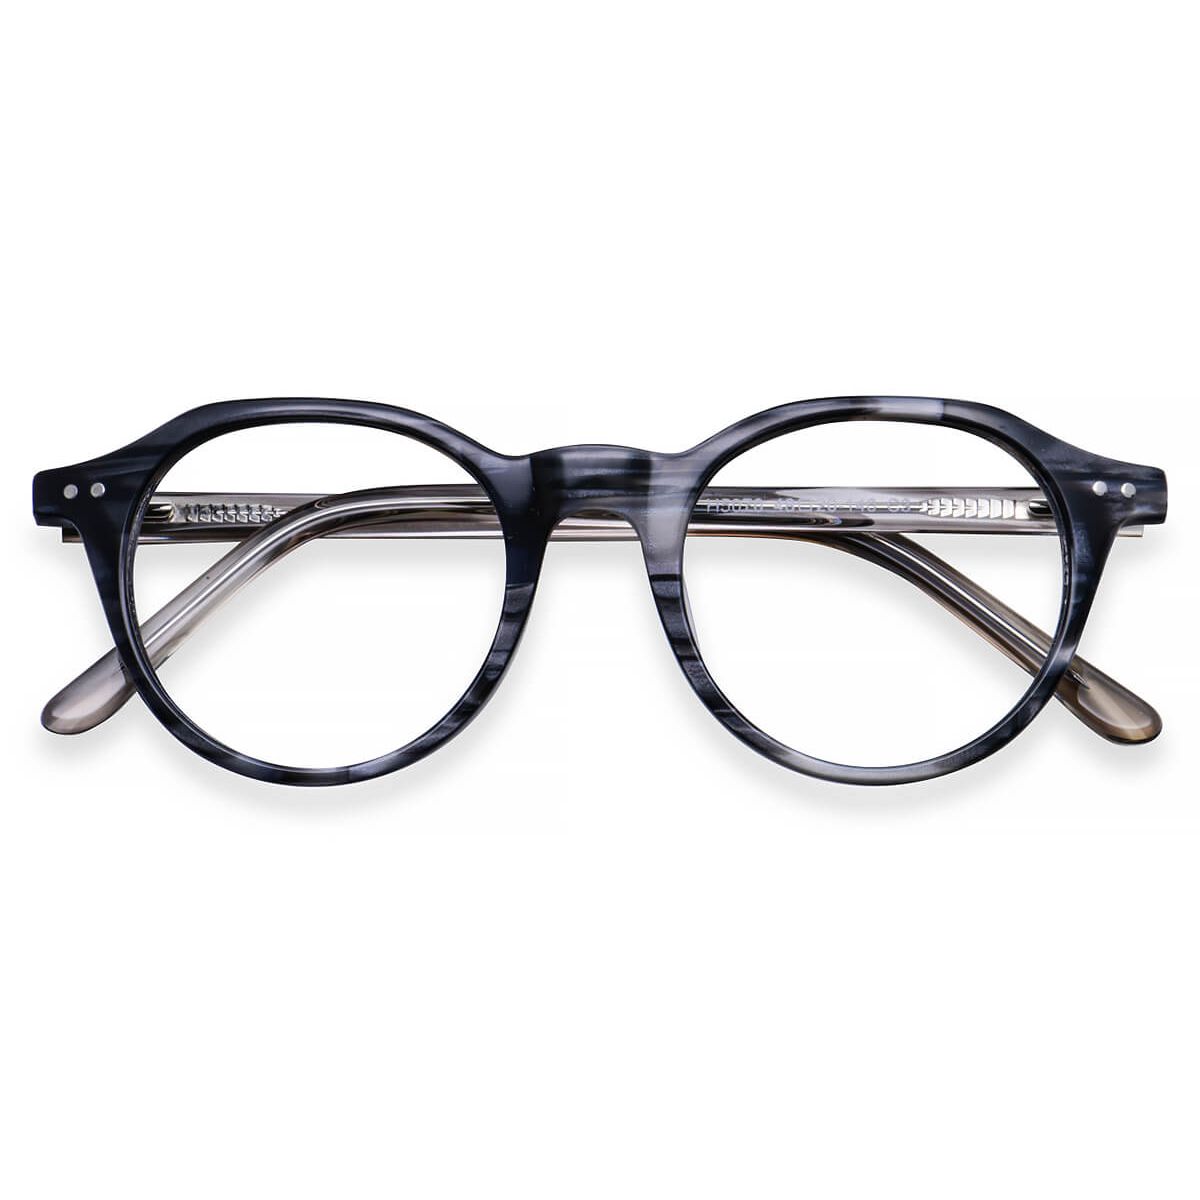 H5070 Round Striped Eyeglasses Frames | Leoptique